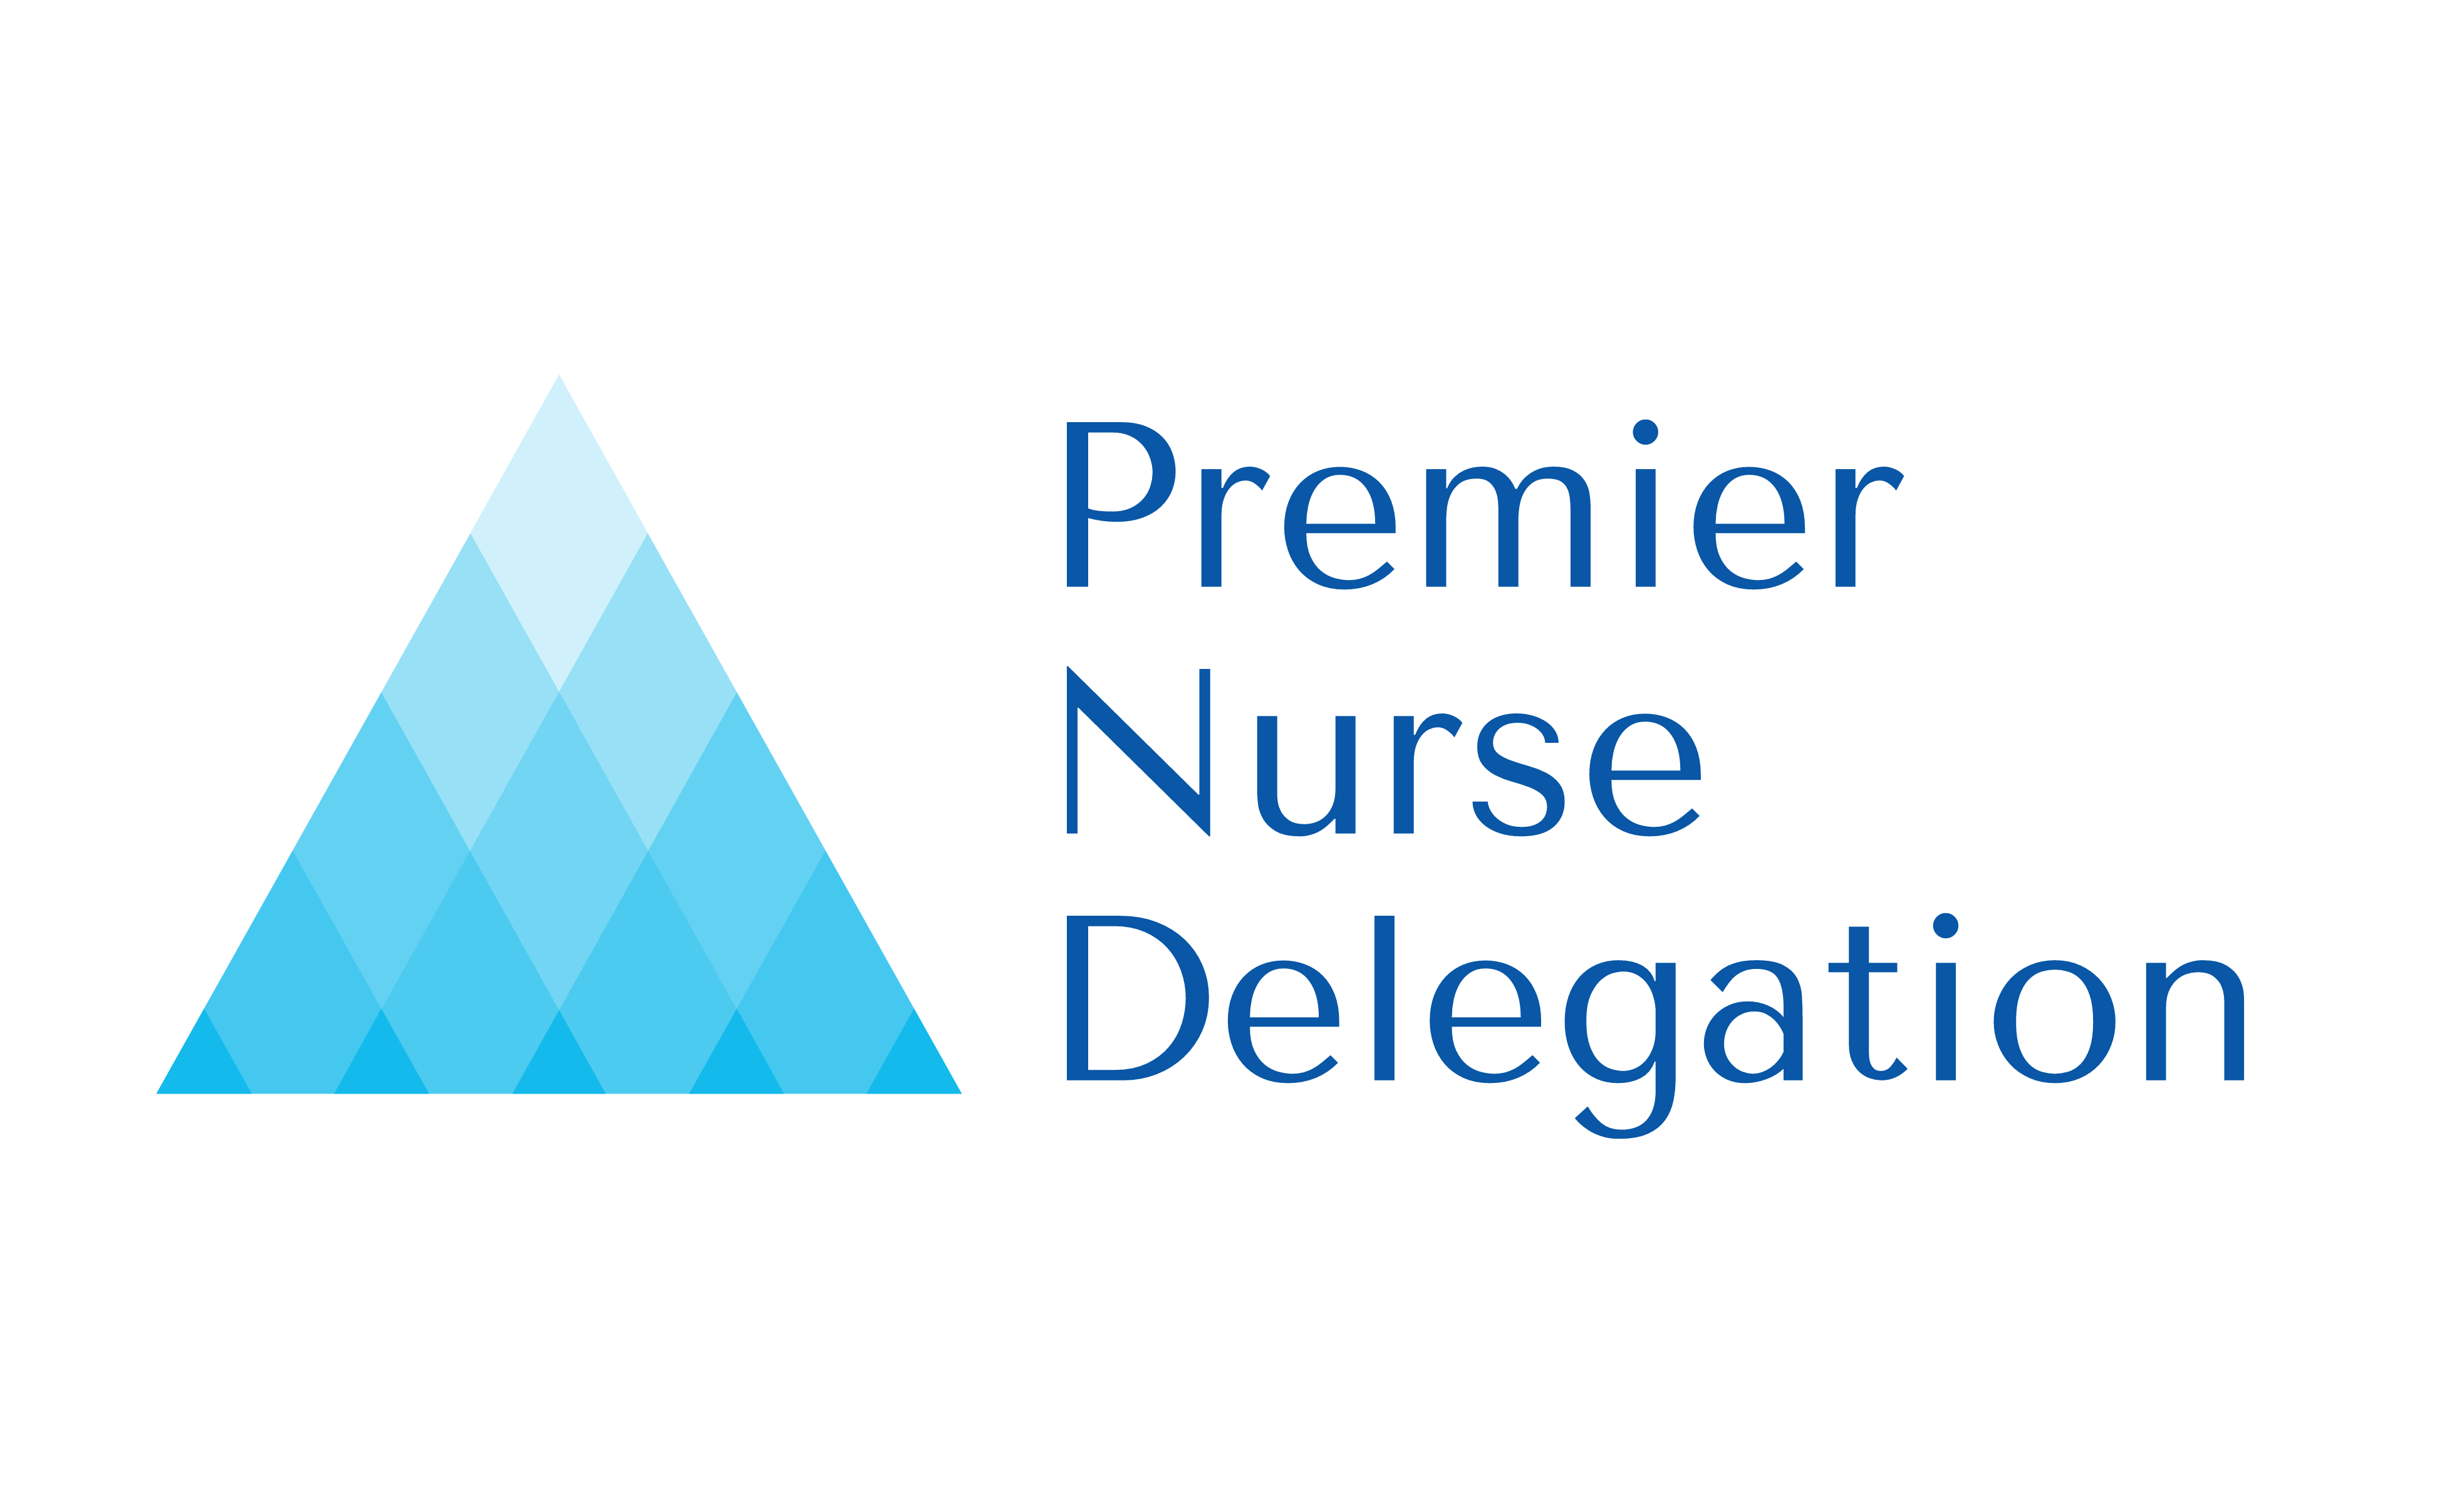 Premier Nurse Delegation